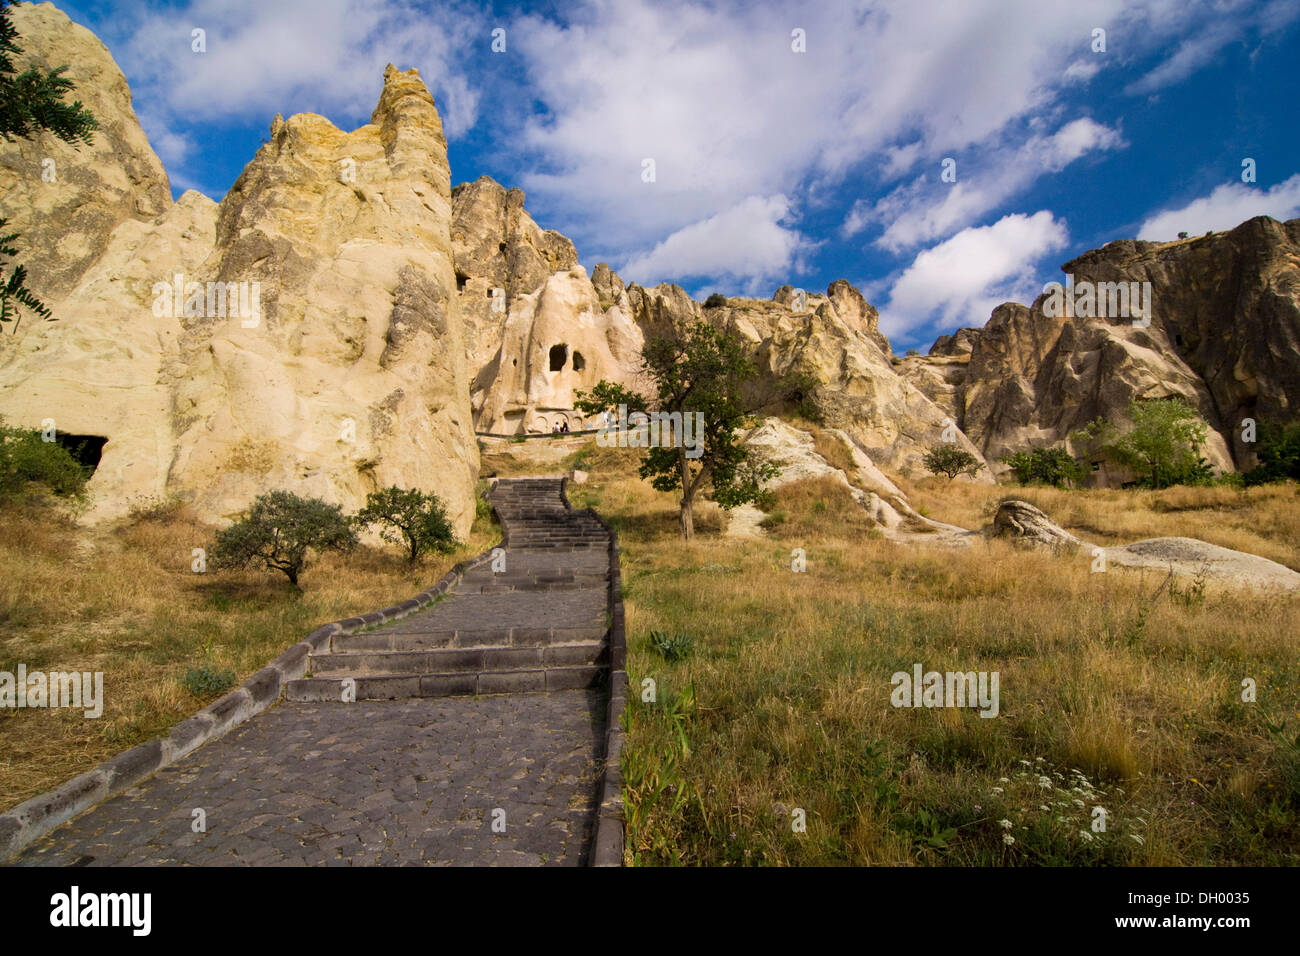 Chiese rupestri nel museo a cielo aperto, sito Patrimonio Mondiale dell'UNESCO, Goreme, Cappadocia, Anatolia centrale, Turchia, Asia Foto Stock